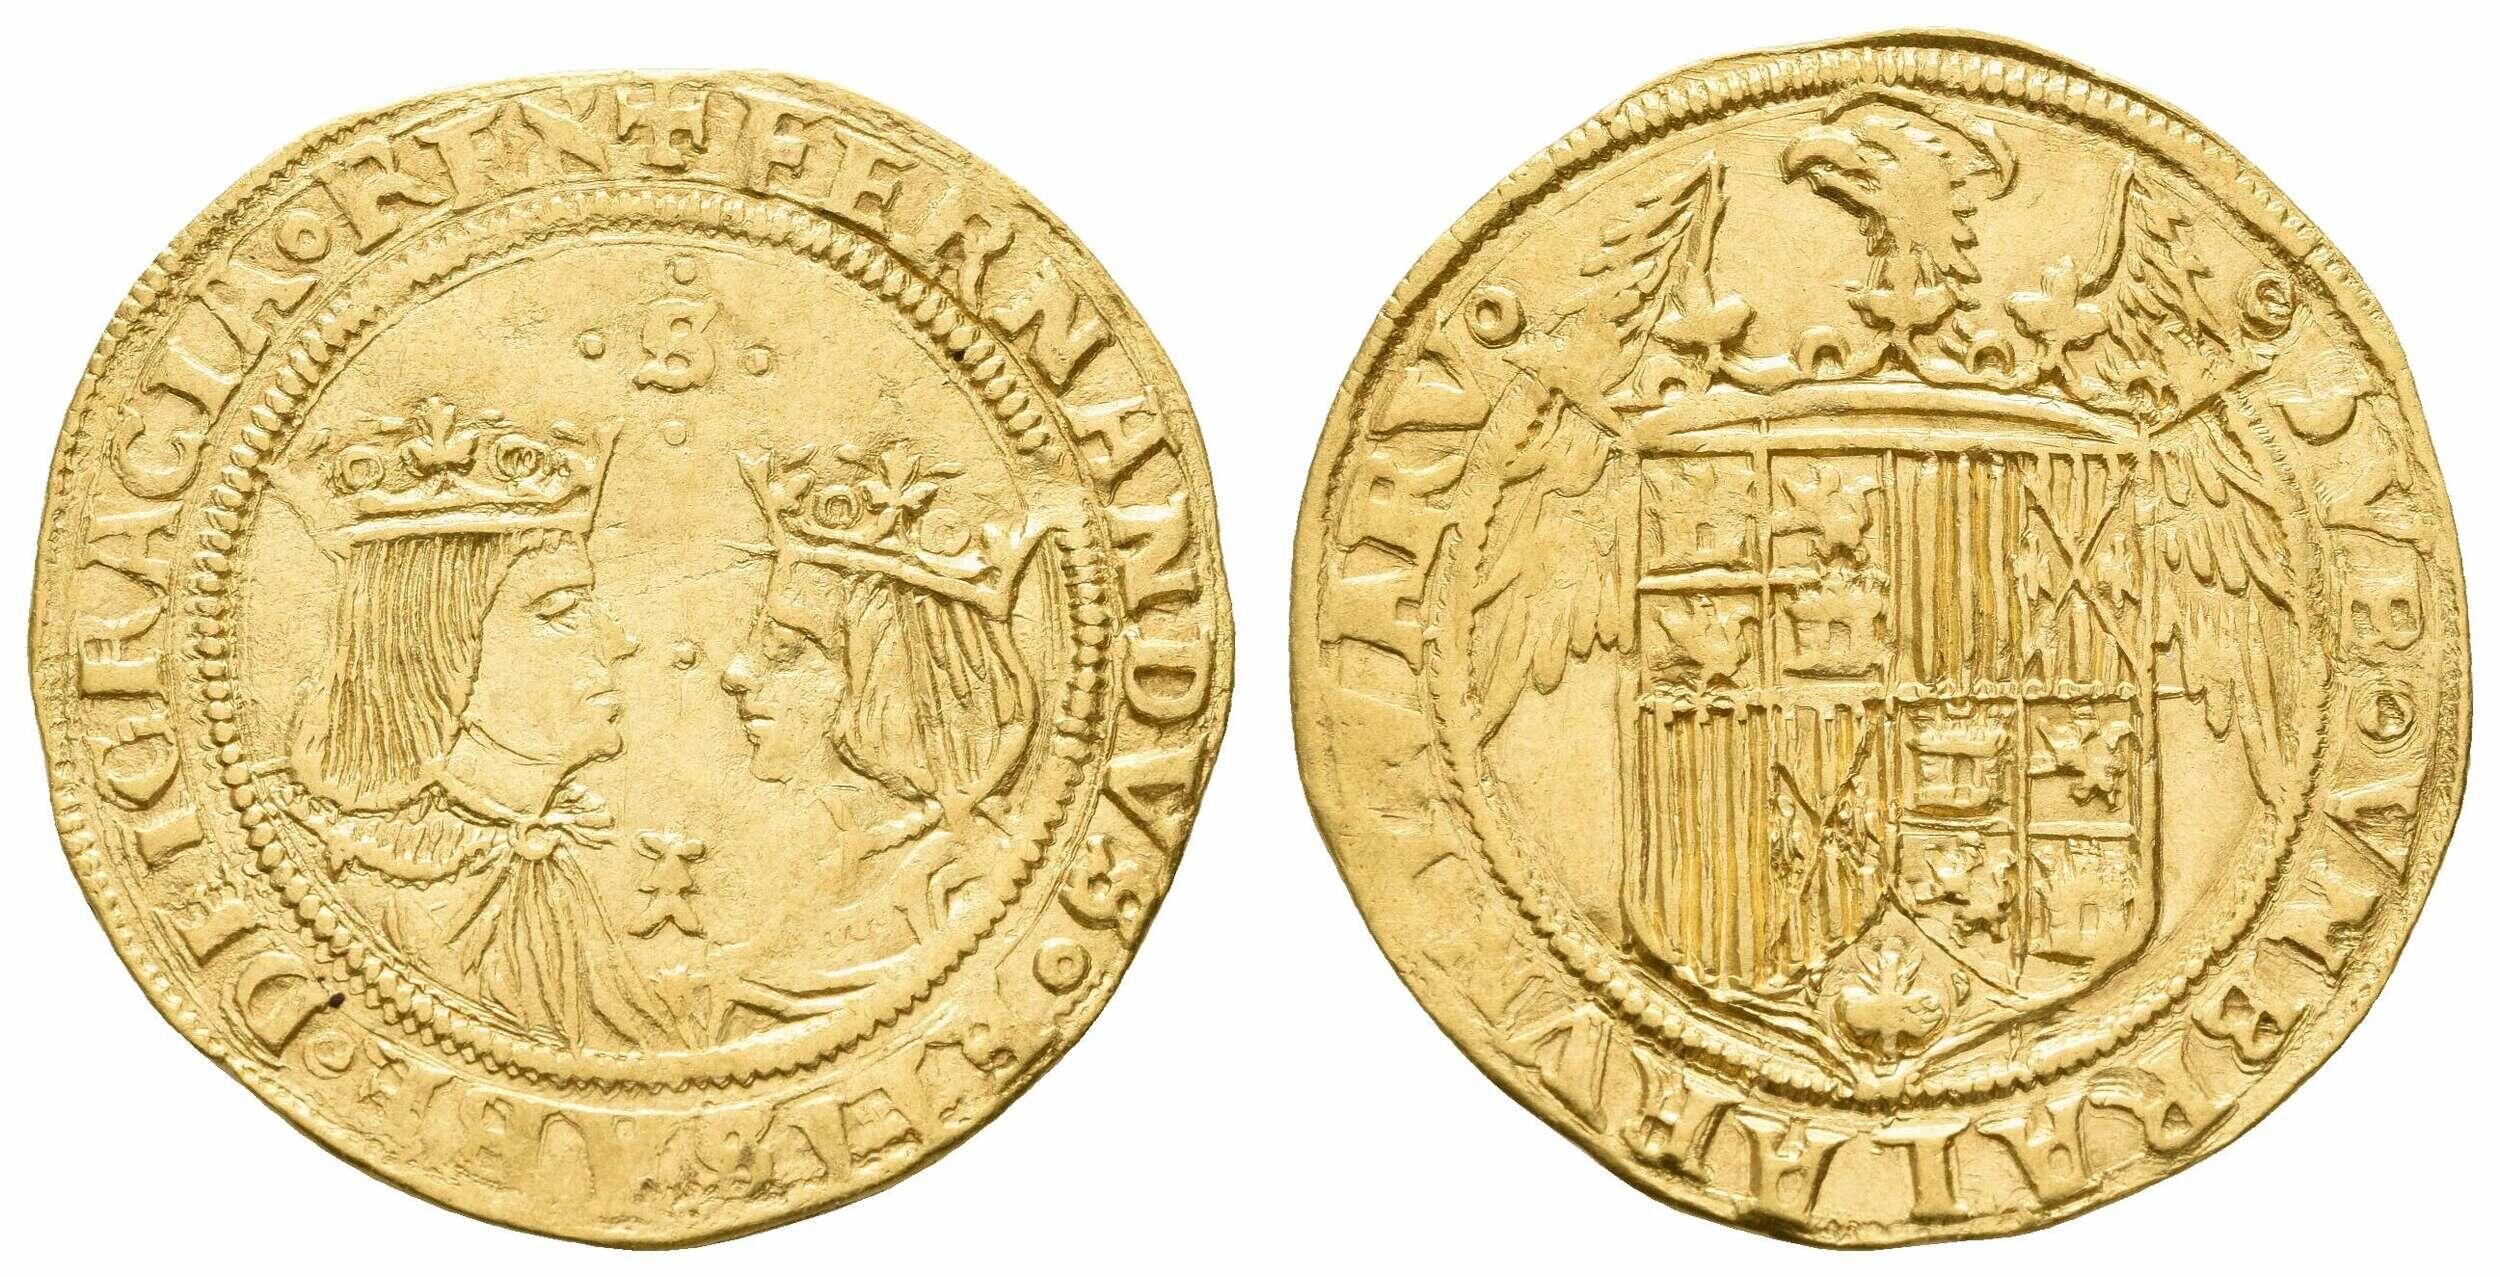 40.500.45: Europa - Spanien - Albert und Isabella, 1598 - 1621